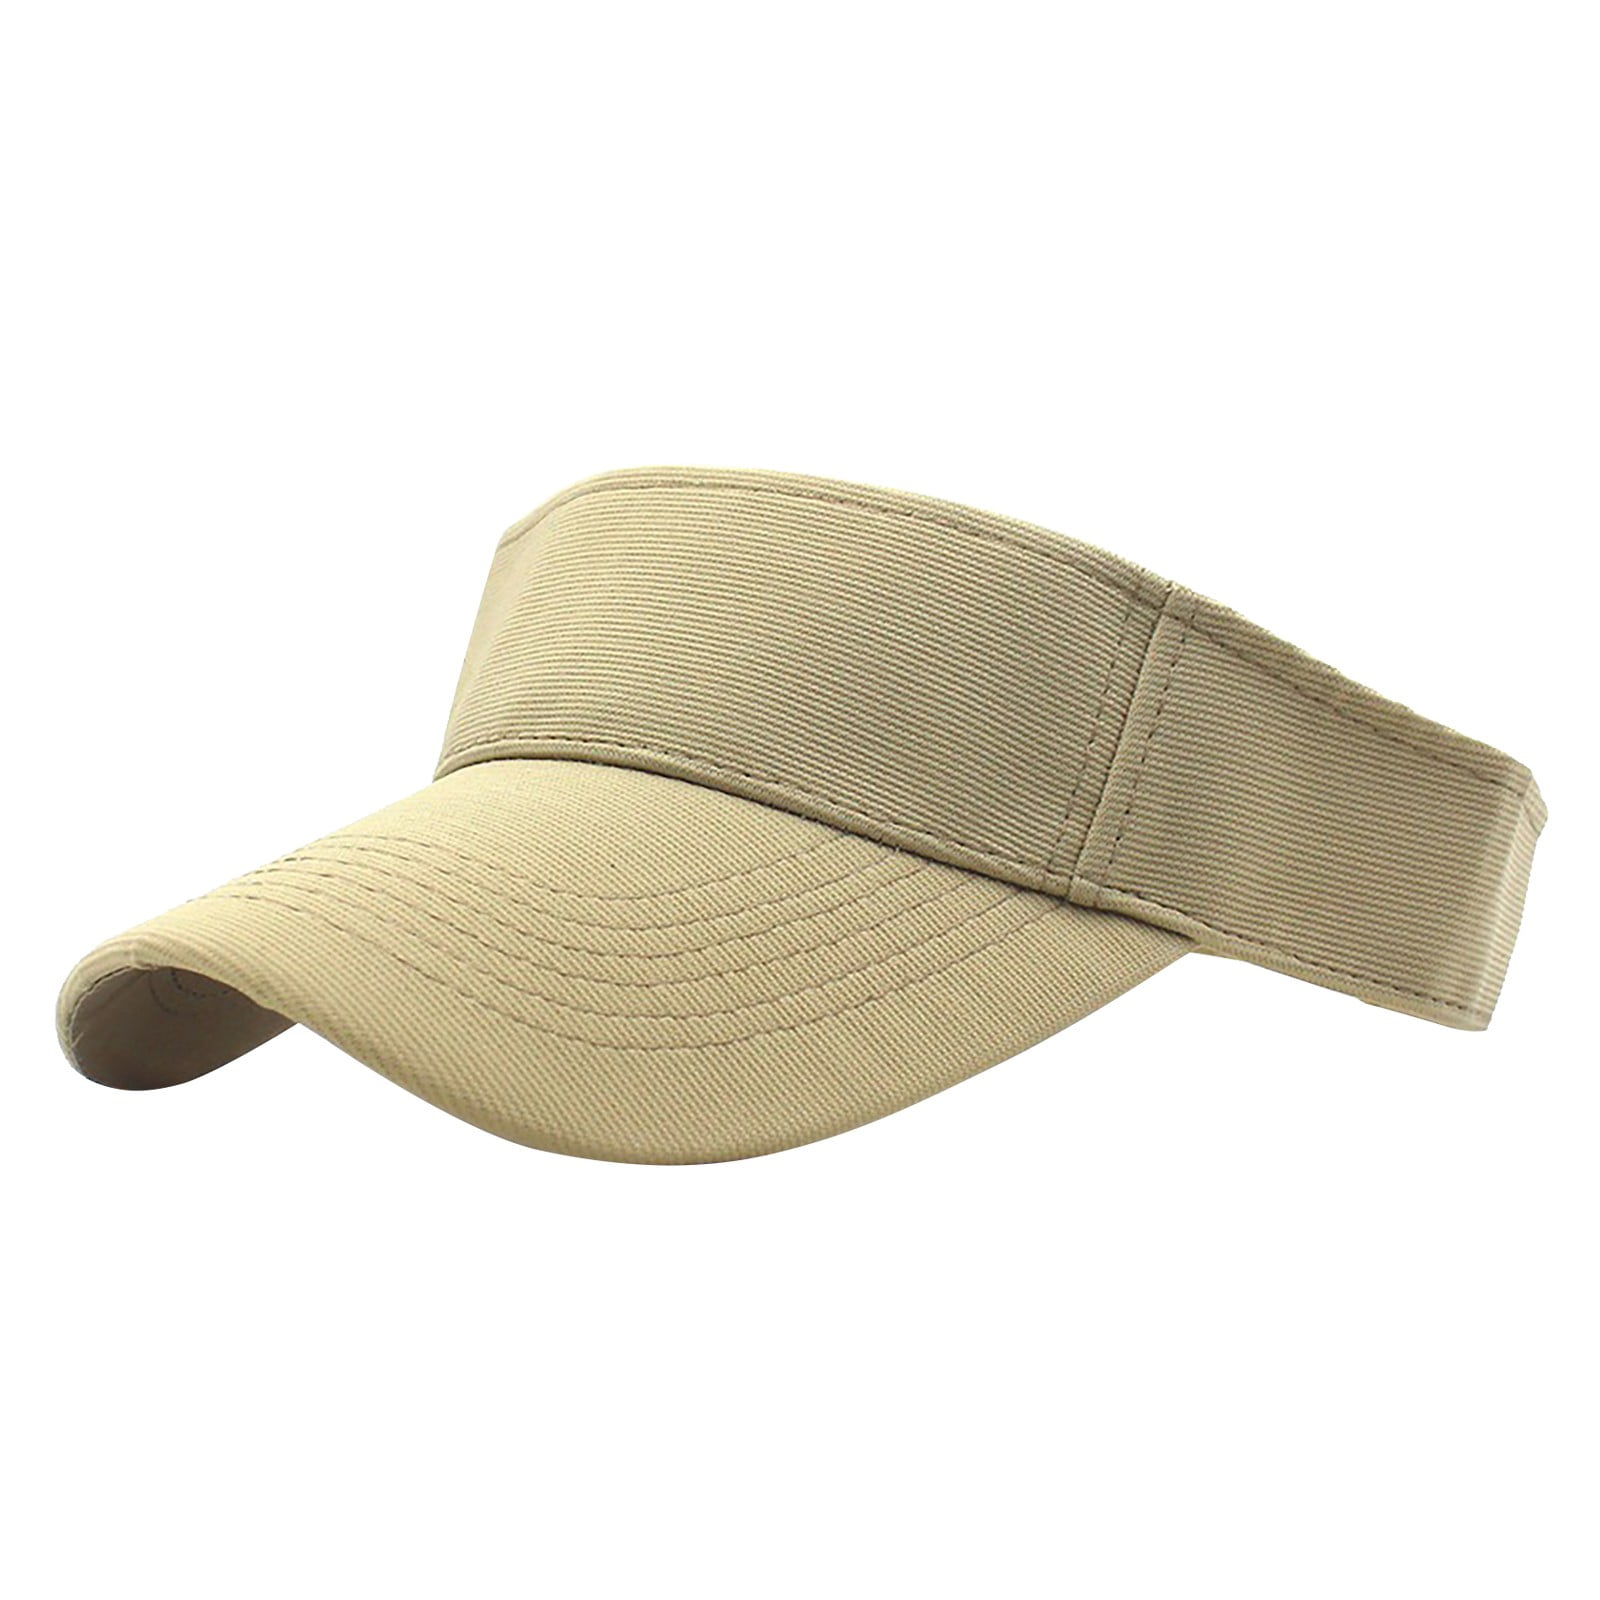 Trucker Mesh Hats for Men Cobbler Hat Cap Beach Adjustable Hat For Women  Sports Sun Visor-Golf Visor Baseball Caps The Baseball Cap Women Baseball  Caps for Summer 